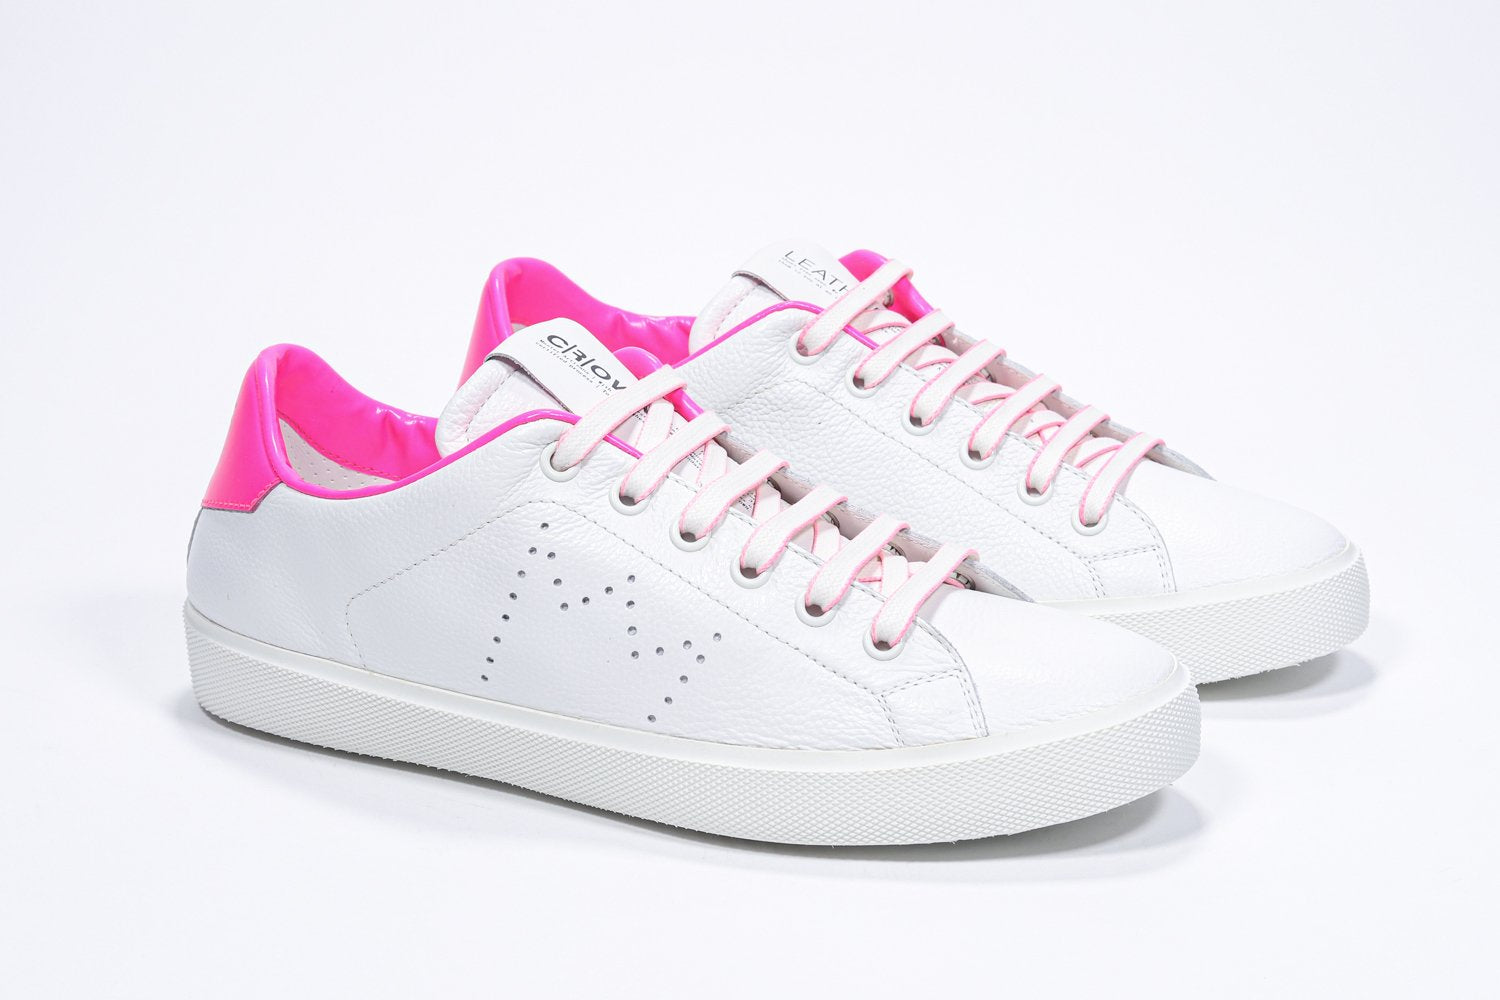 Tre quarti di BASSE  sneaker  bianco con dettagli rosa neon e logo della corona traforato sulla tomaia. Tomaia in pelle e suola in gomma bianca.